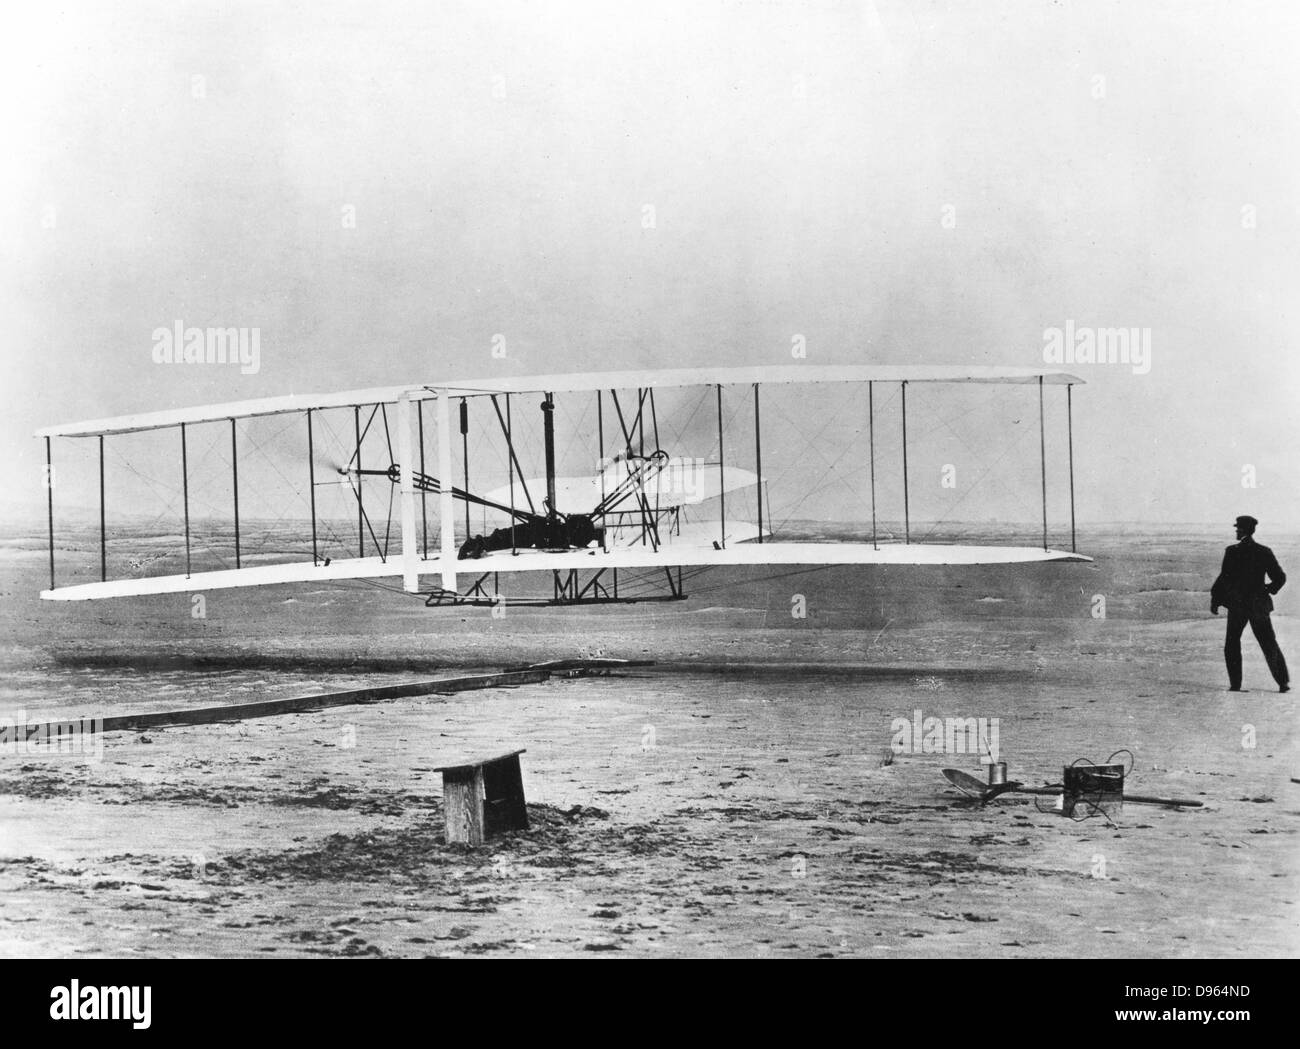 Der erste Motorflug, 17. Dezember 1903, in Kitty Hawk, North Carolina. Wilbur und Orville Wright. Foto Bestätigung muss der Smithsonian Institution gemacht werden Stockfoto